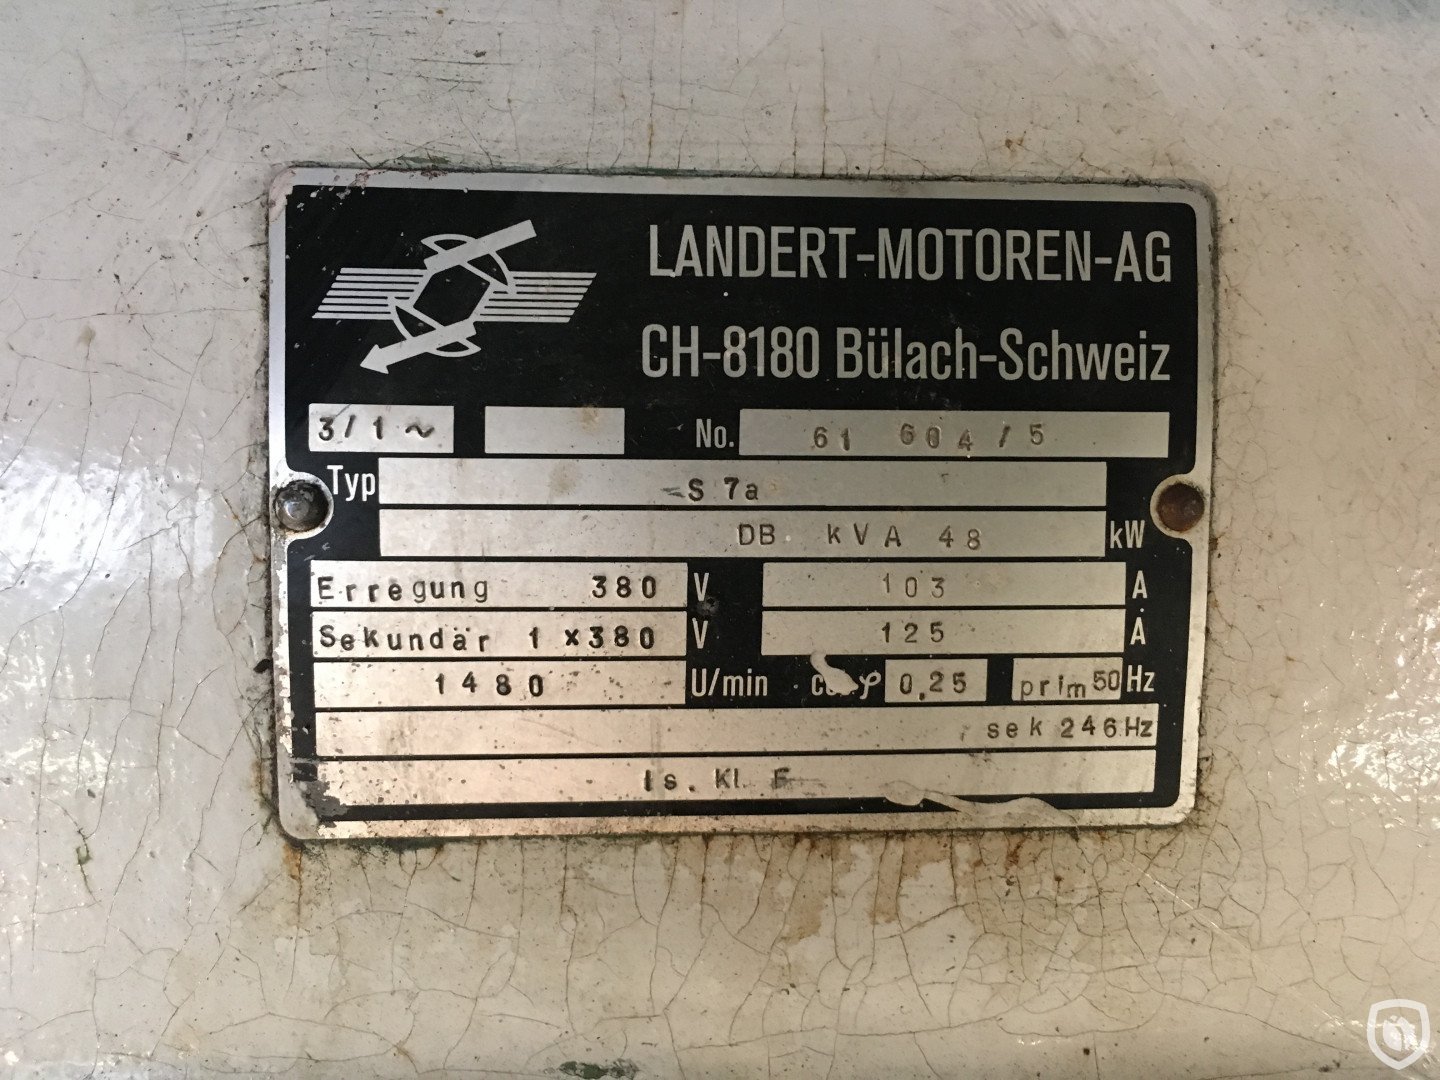 Landert S7a